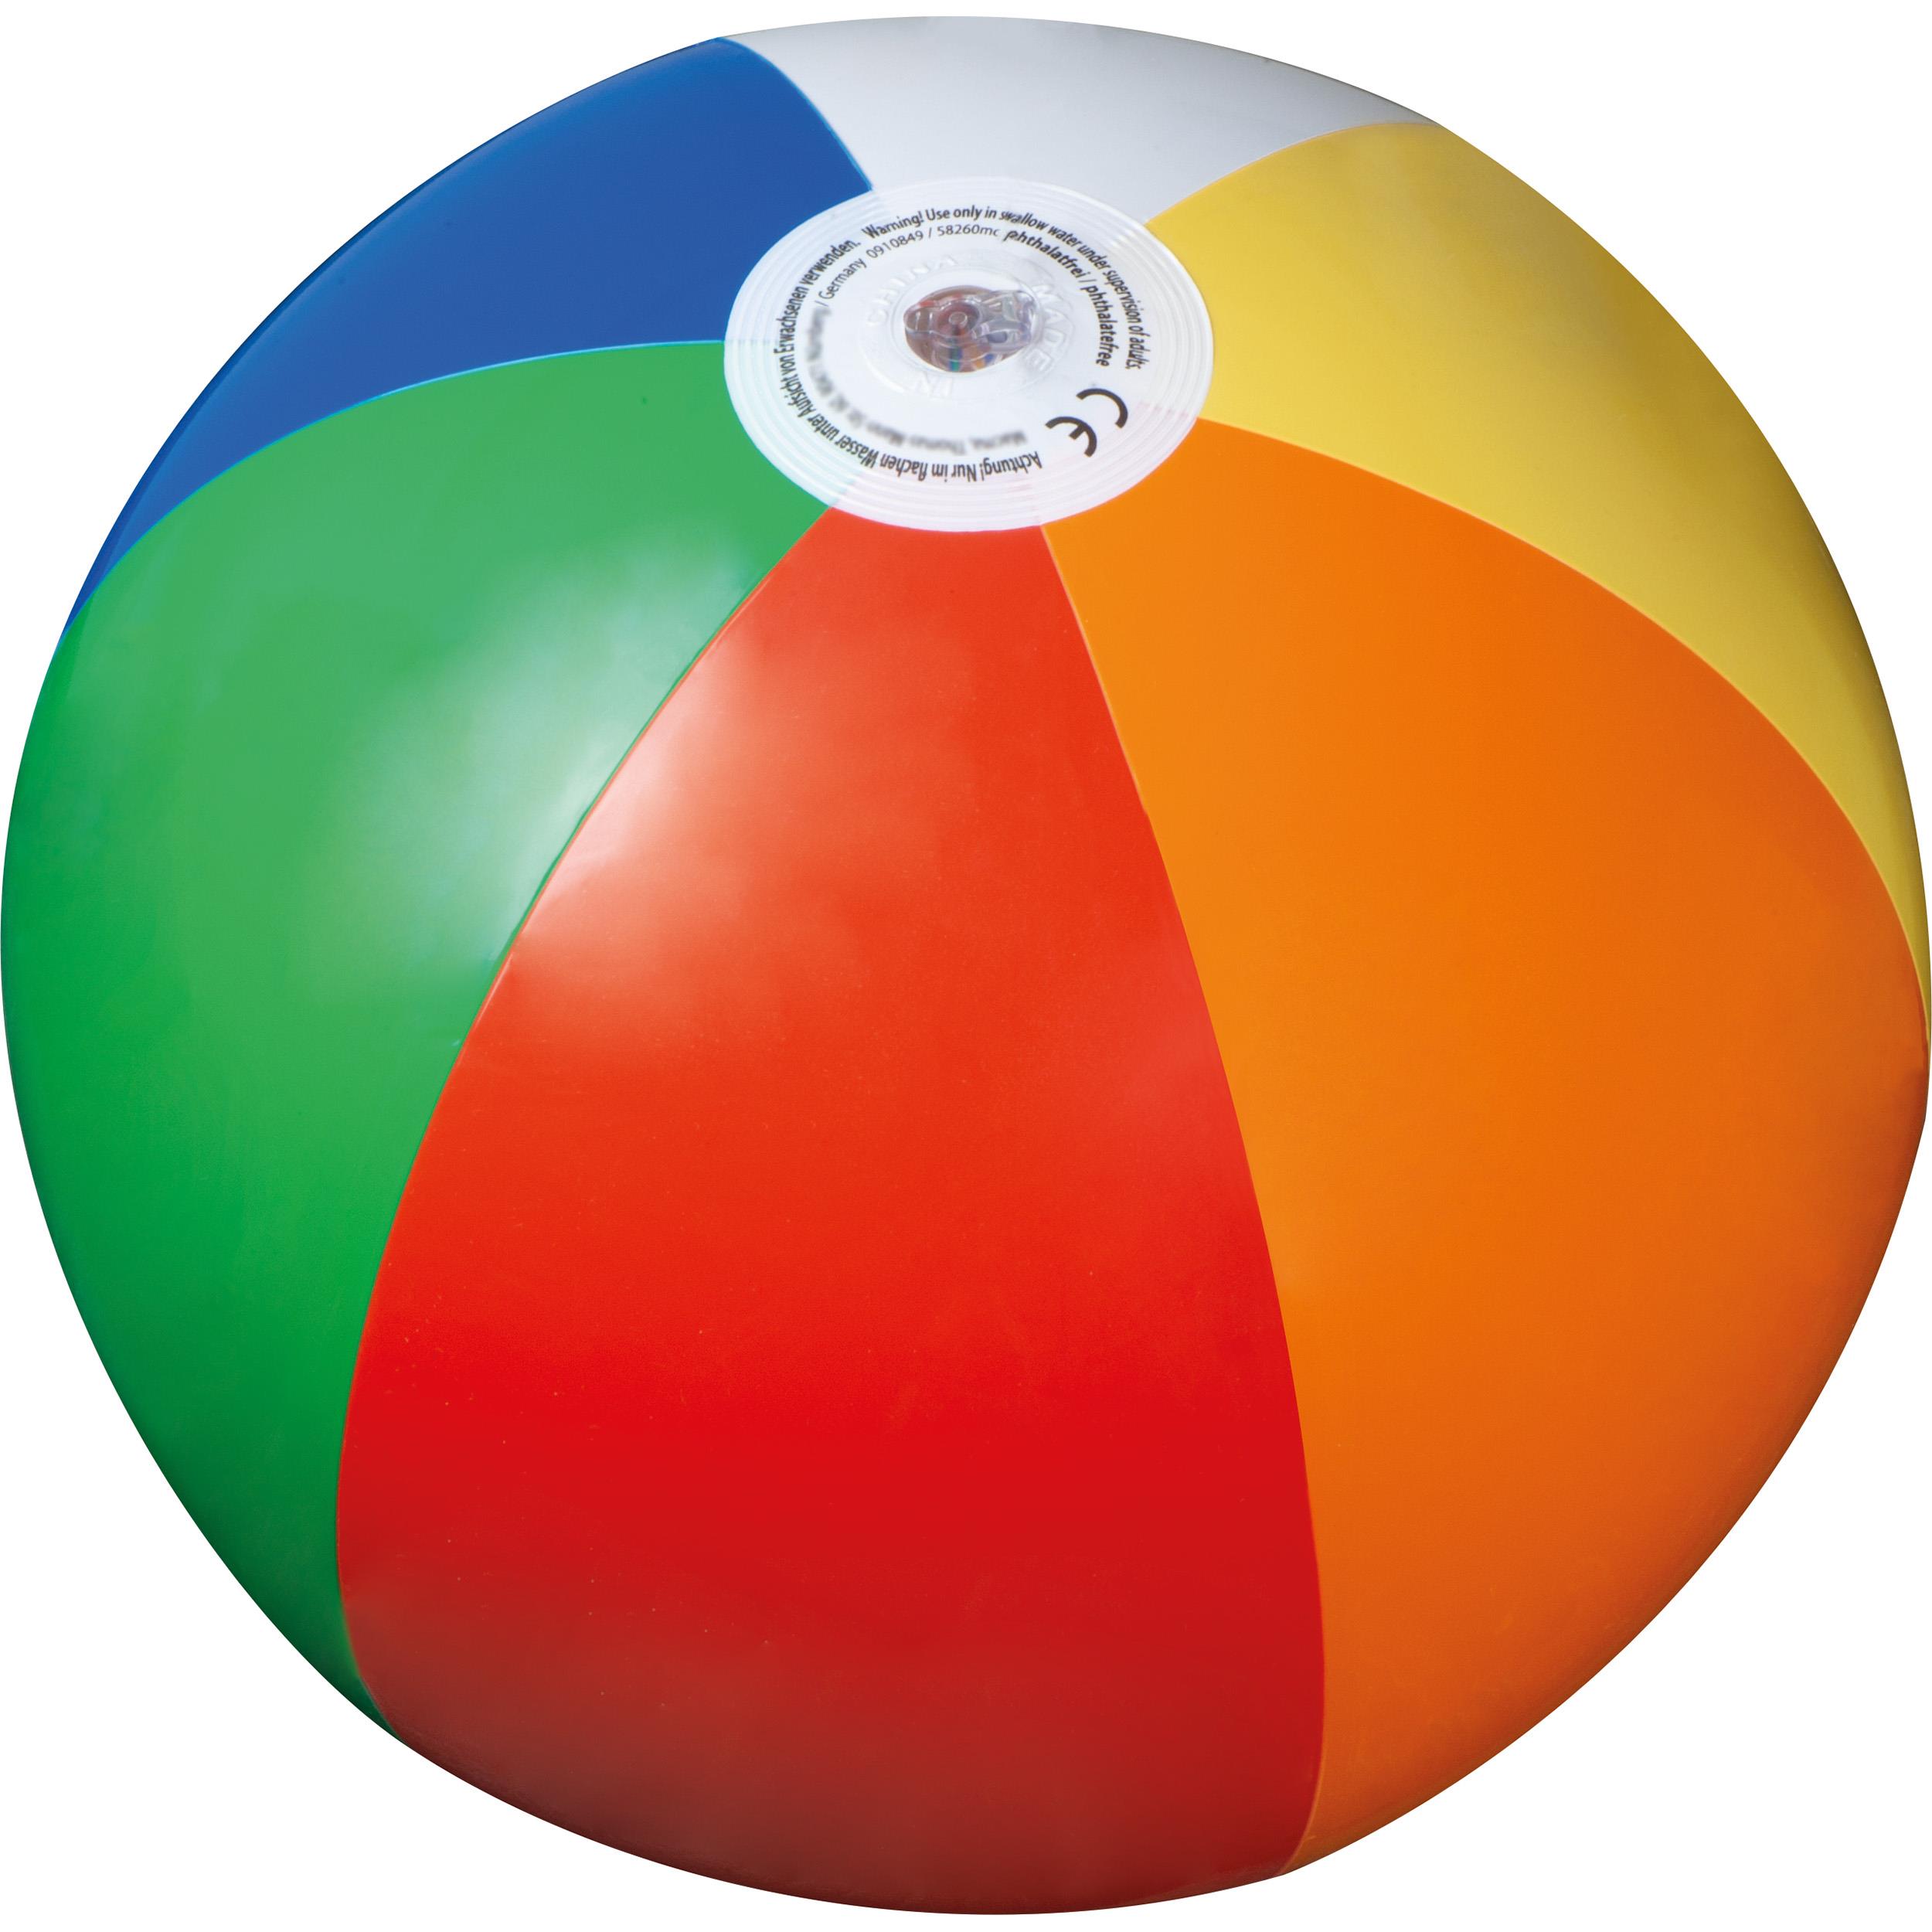 Phthalatfreier Strandball, multicolor